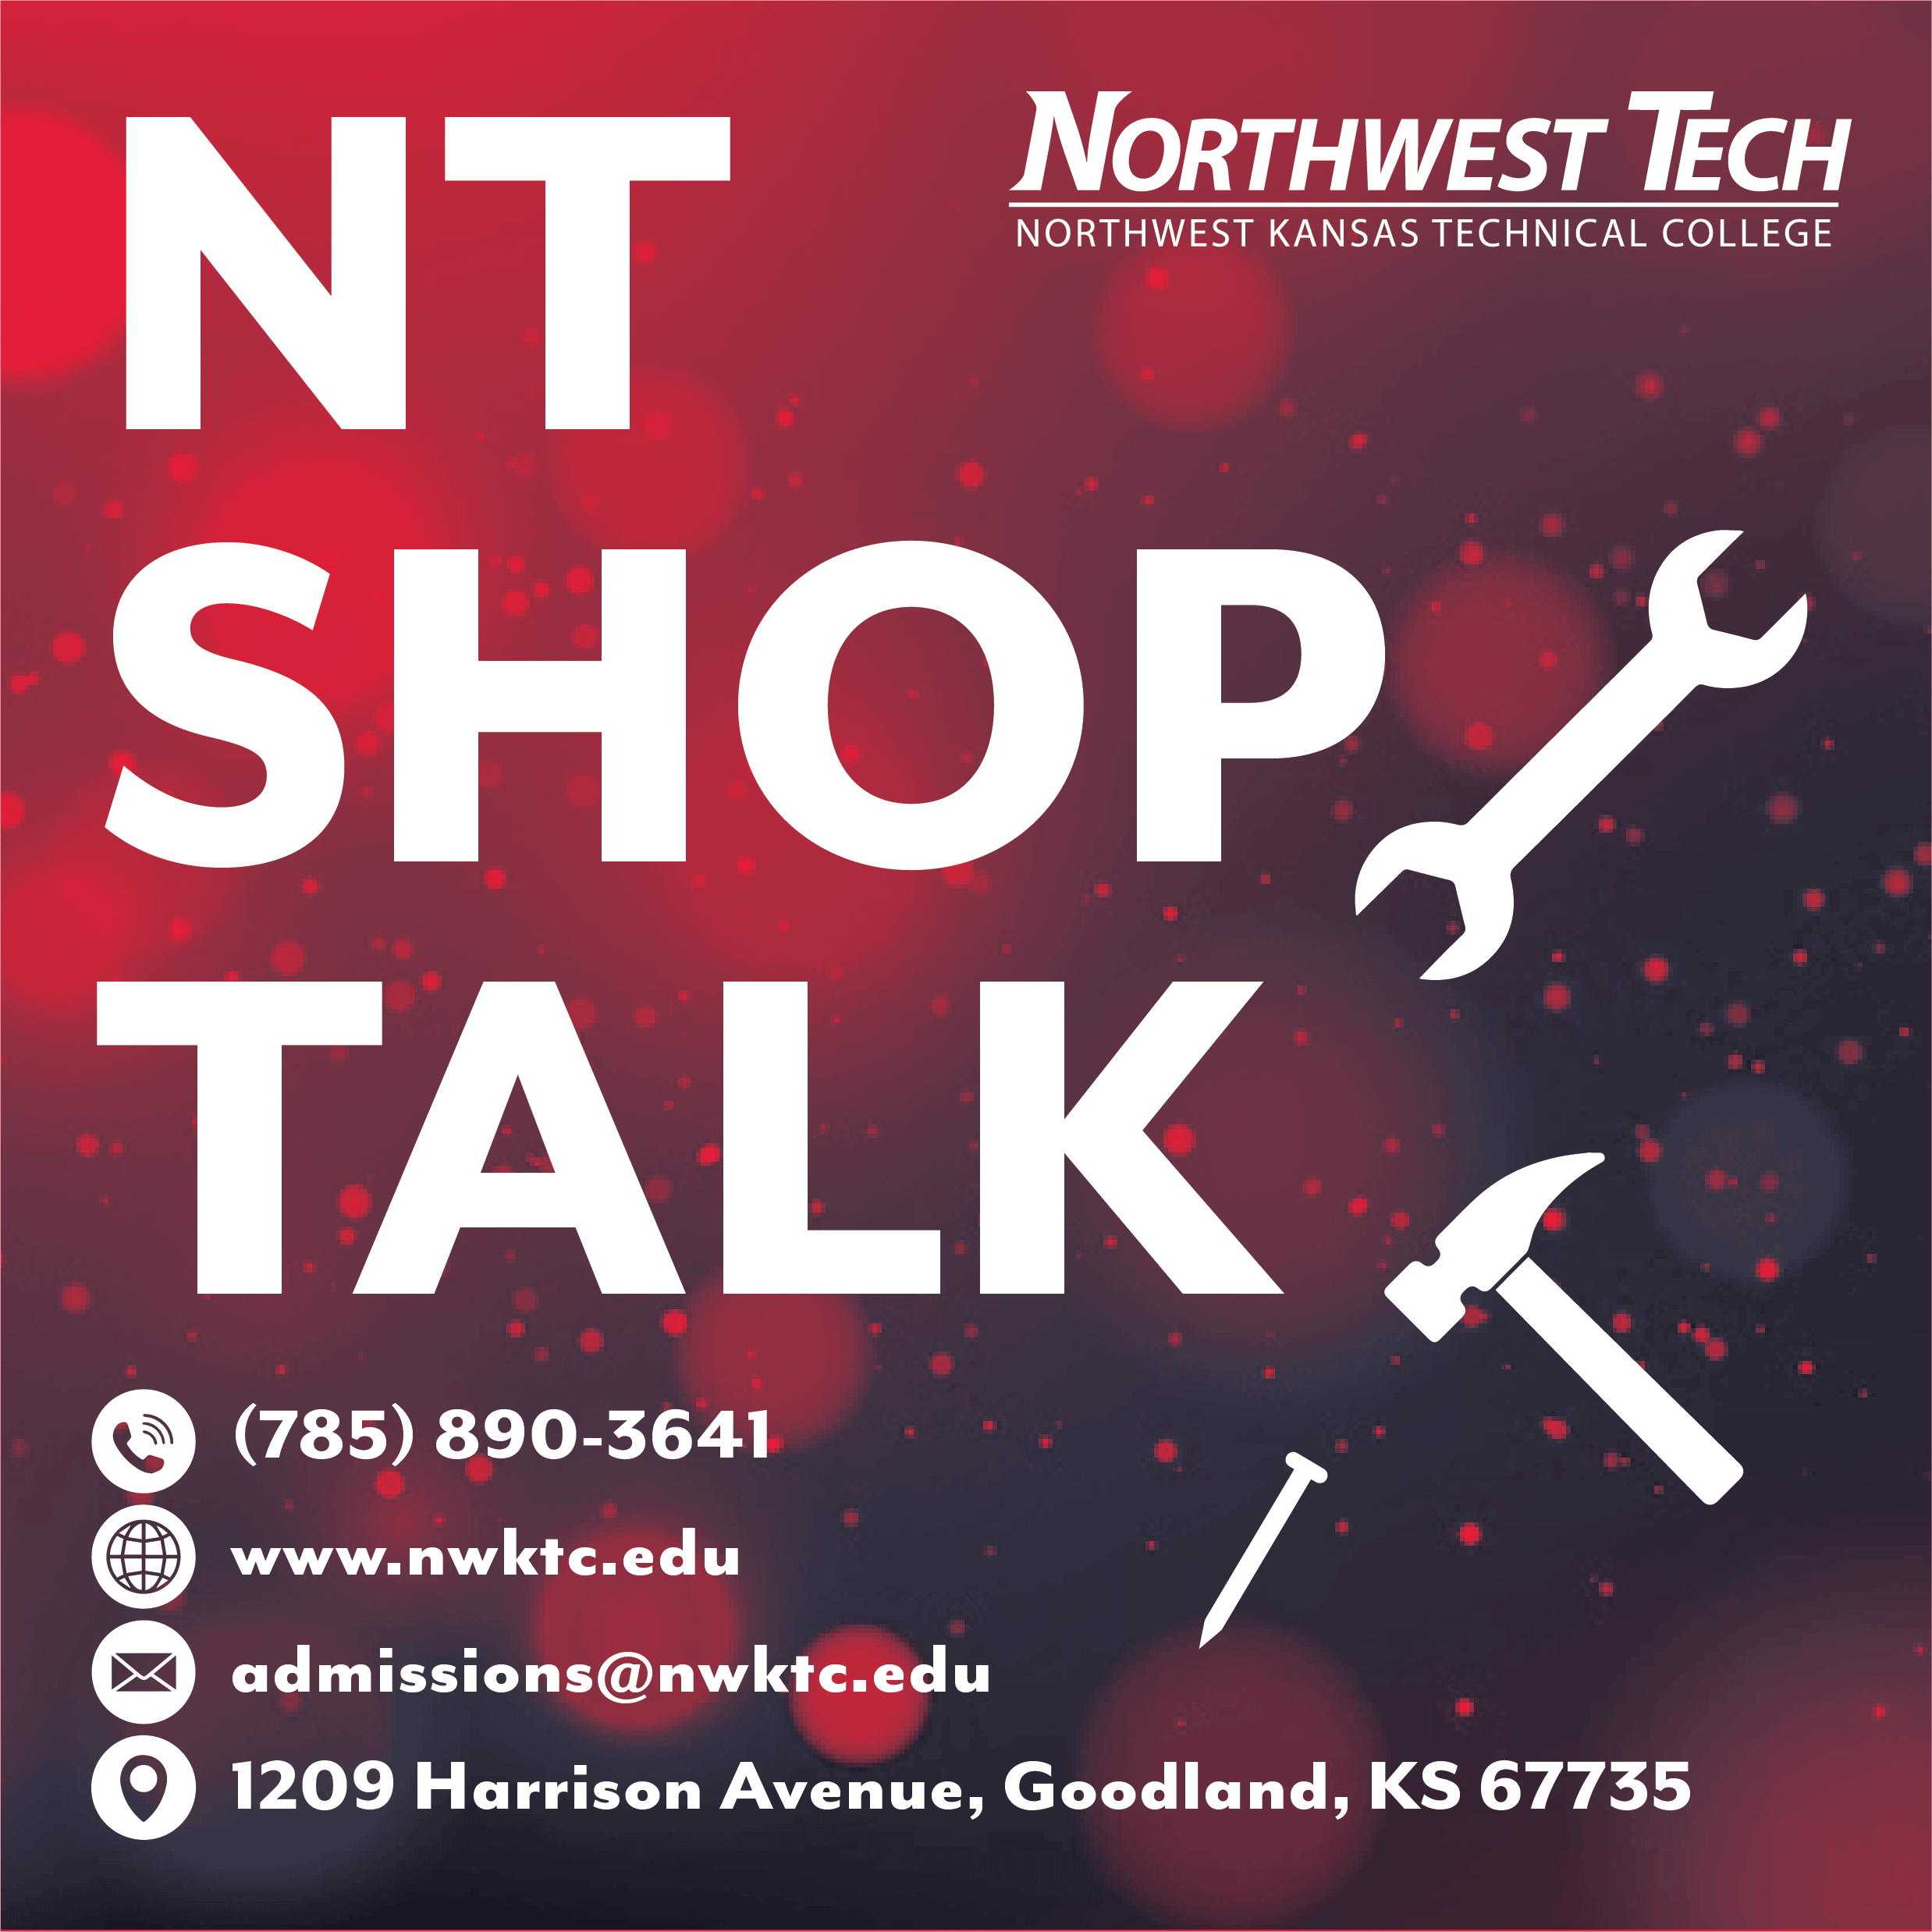 NT Shop Talk